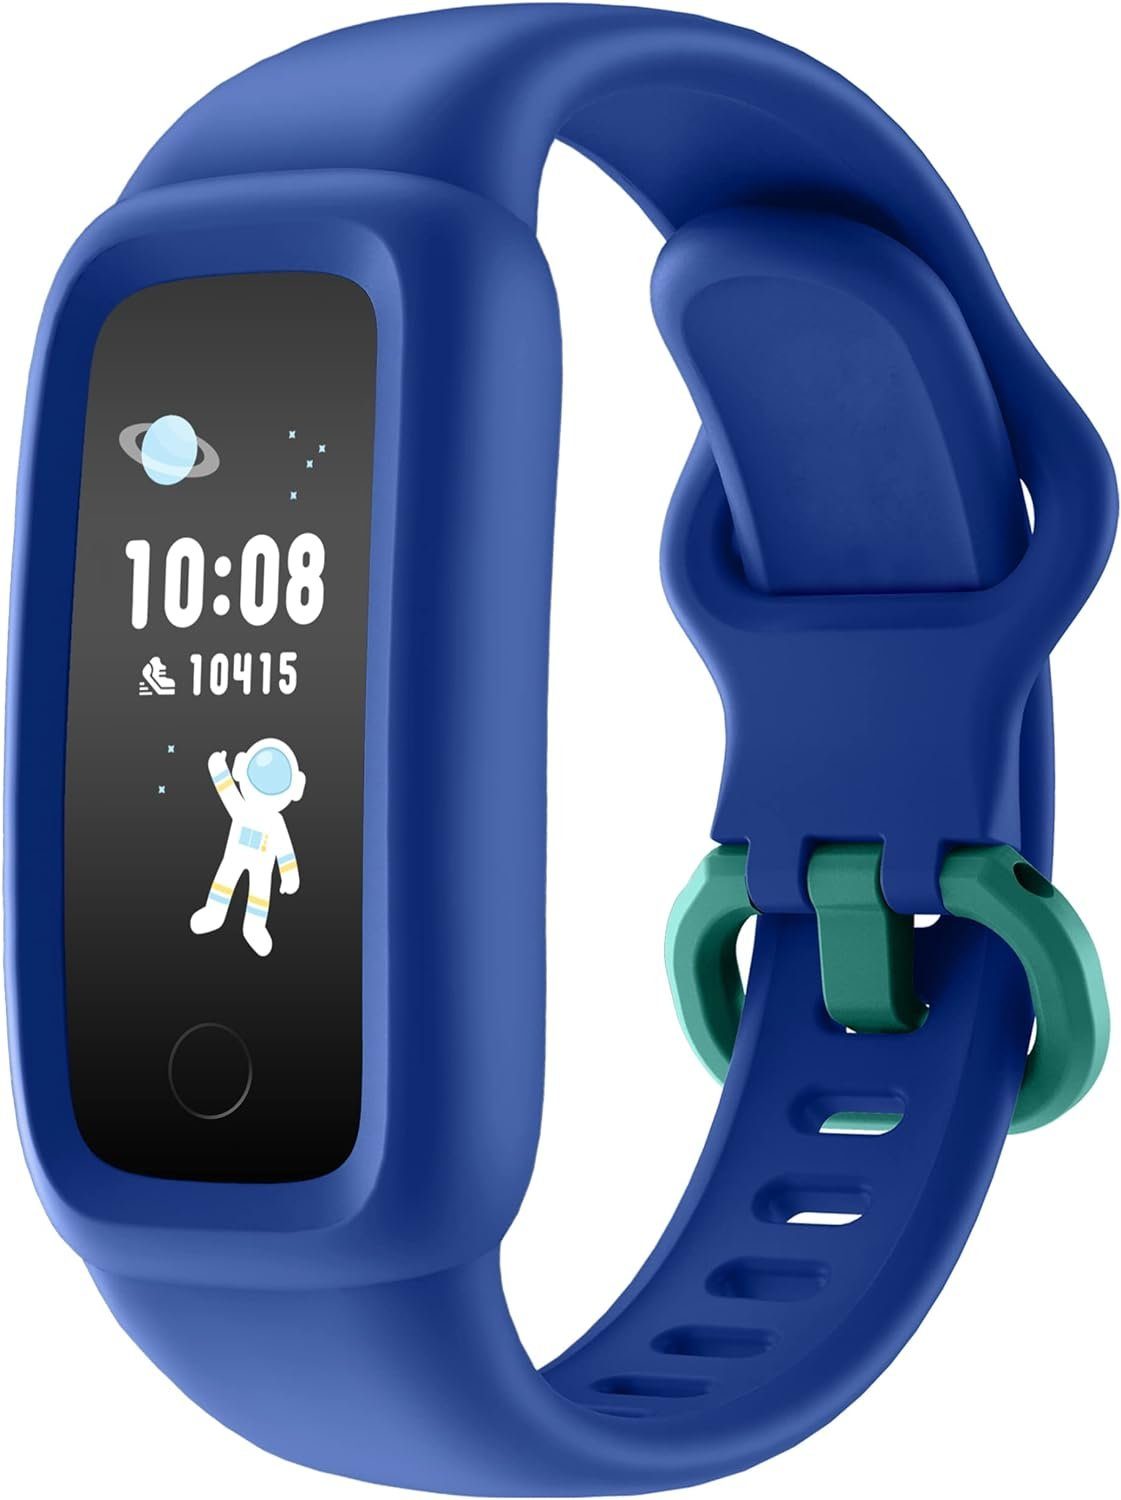 BIGGERFIVE Fitnessband (Android iOS), Aktivitätstracker Pulsuhr Tracker für Fitness Schrittzähler Kinder Uhr